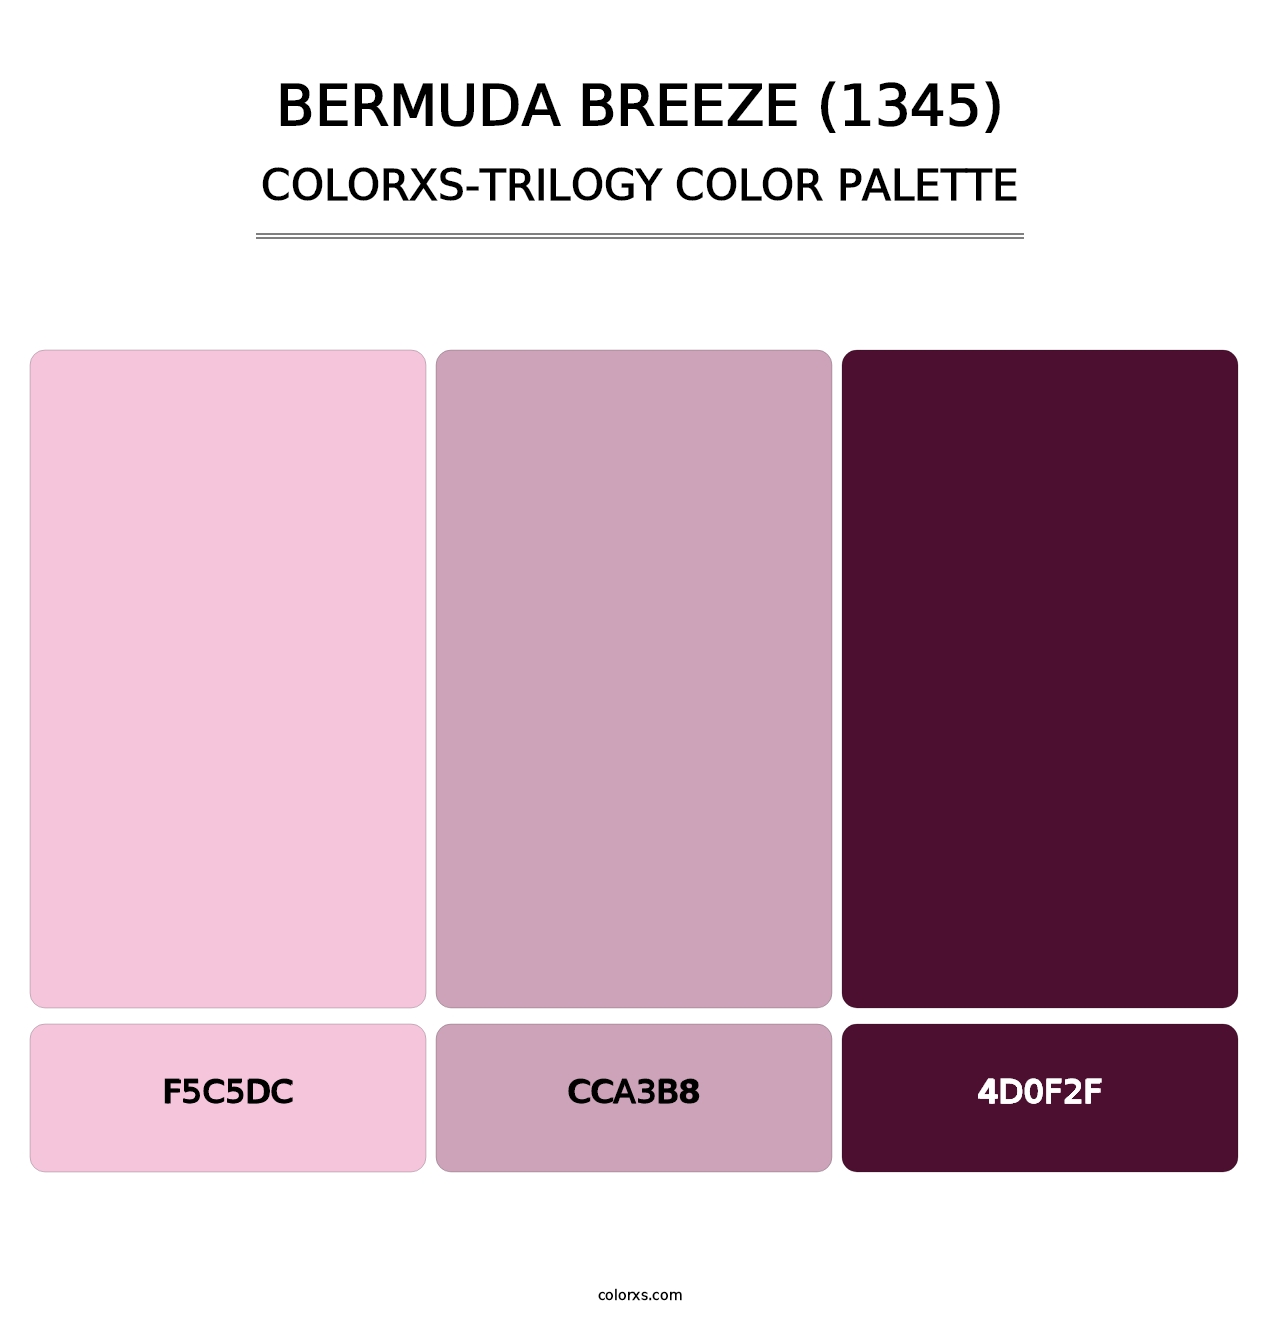 Bermuda Breeze (1345) - Colorxs Trilogy Palette